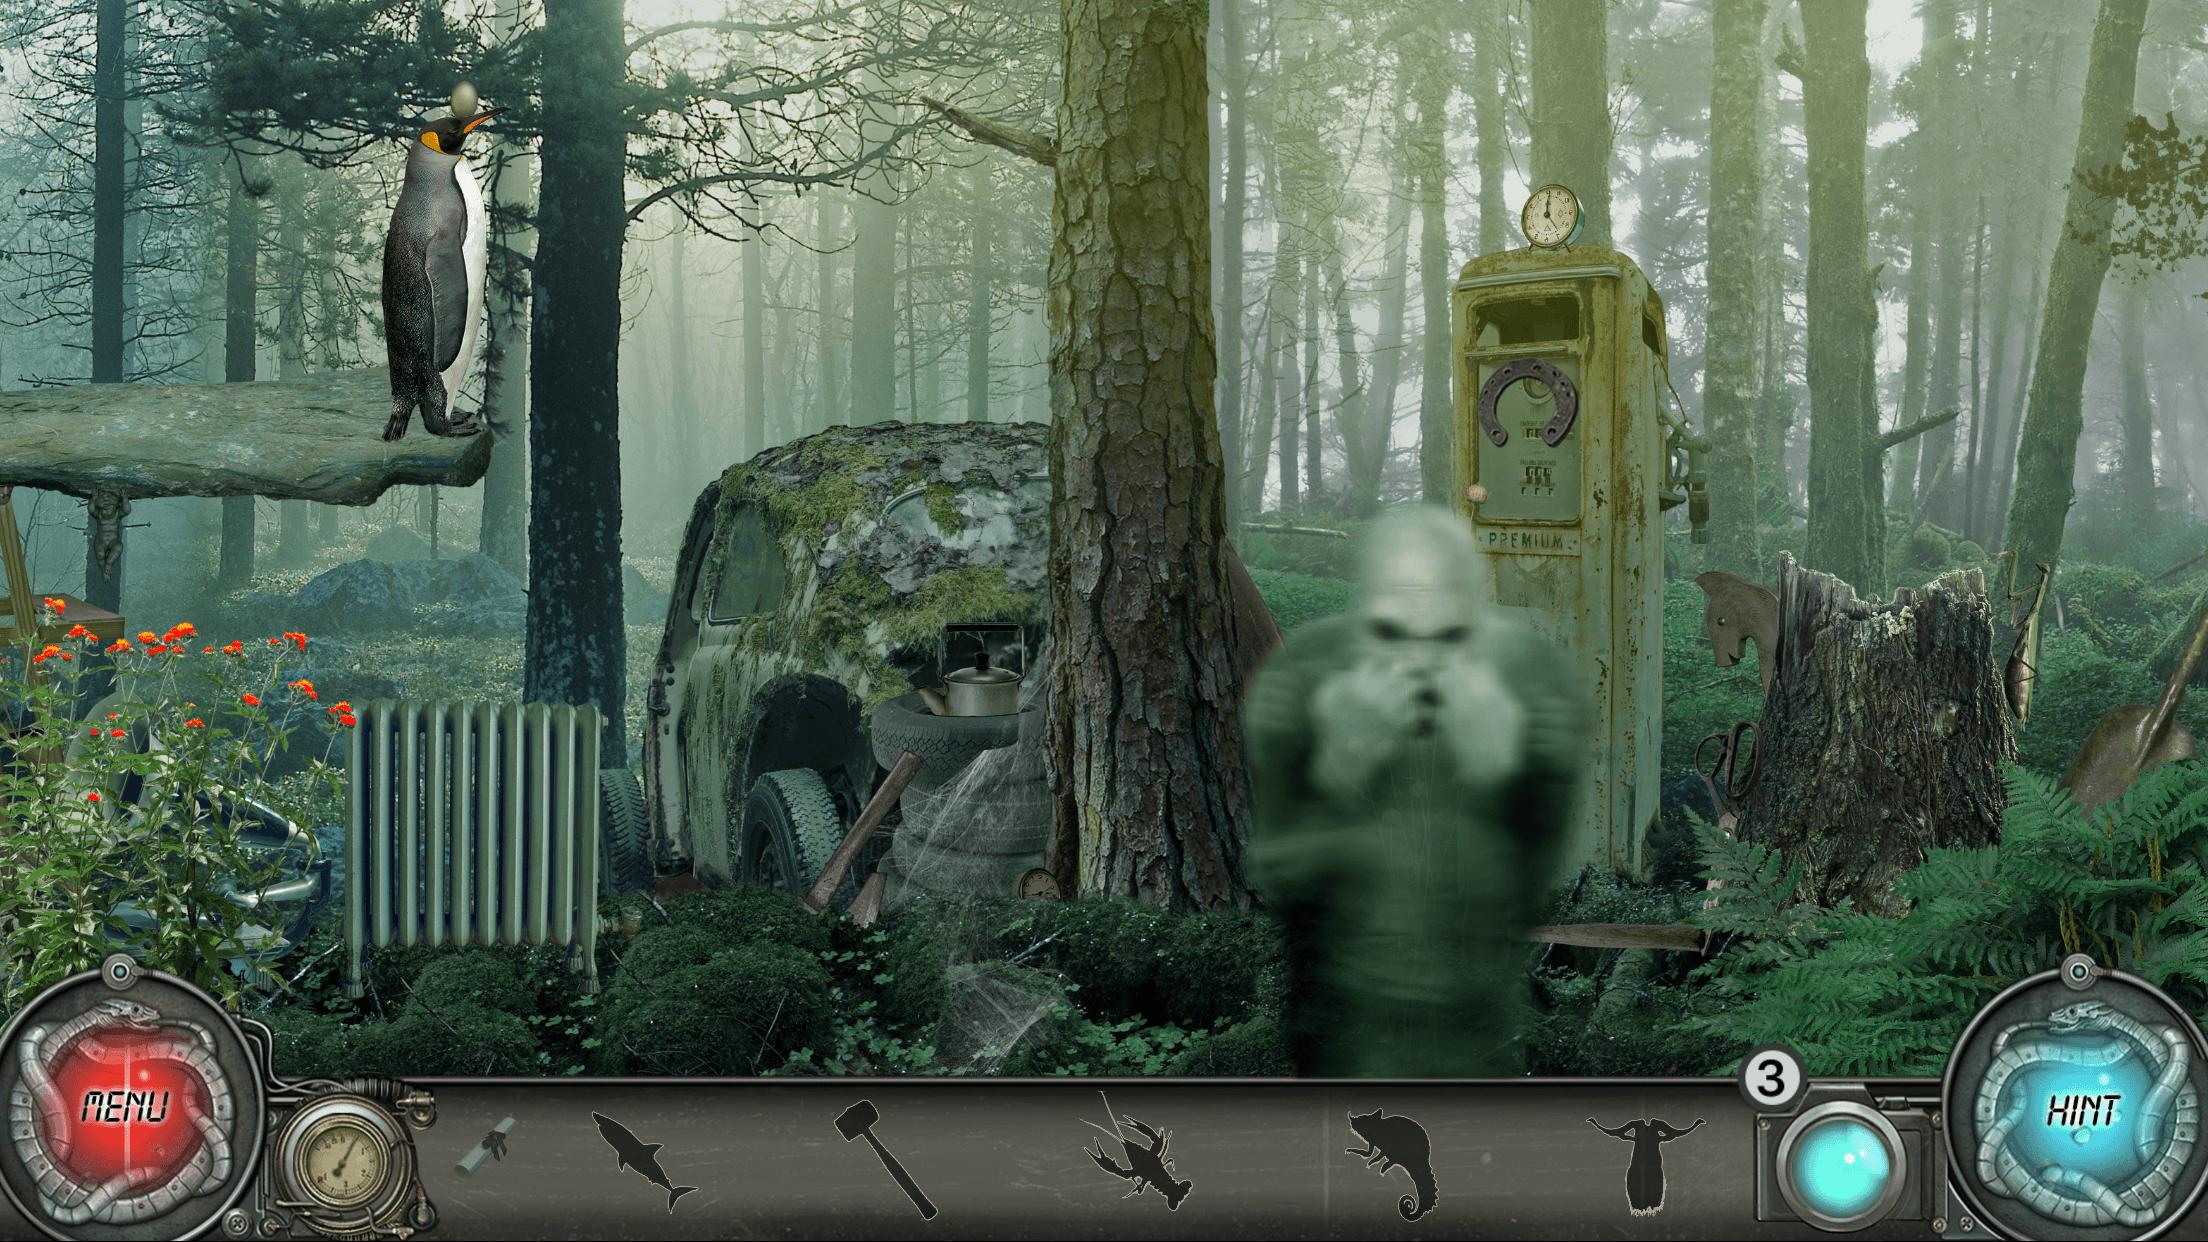 Time Trap 2 Mystery Hidden Object Adventure Games 1.0.025 Screenshot 12